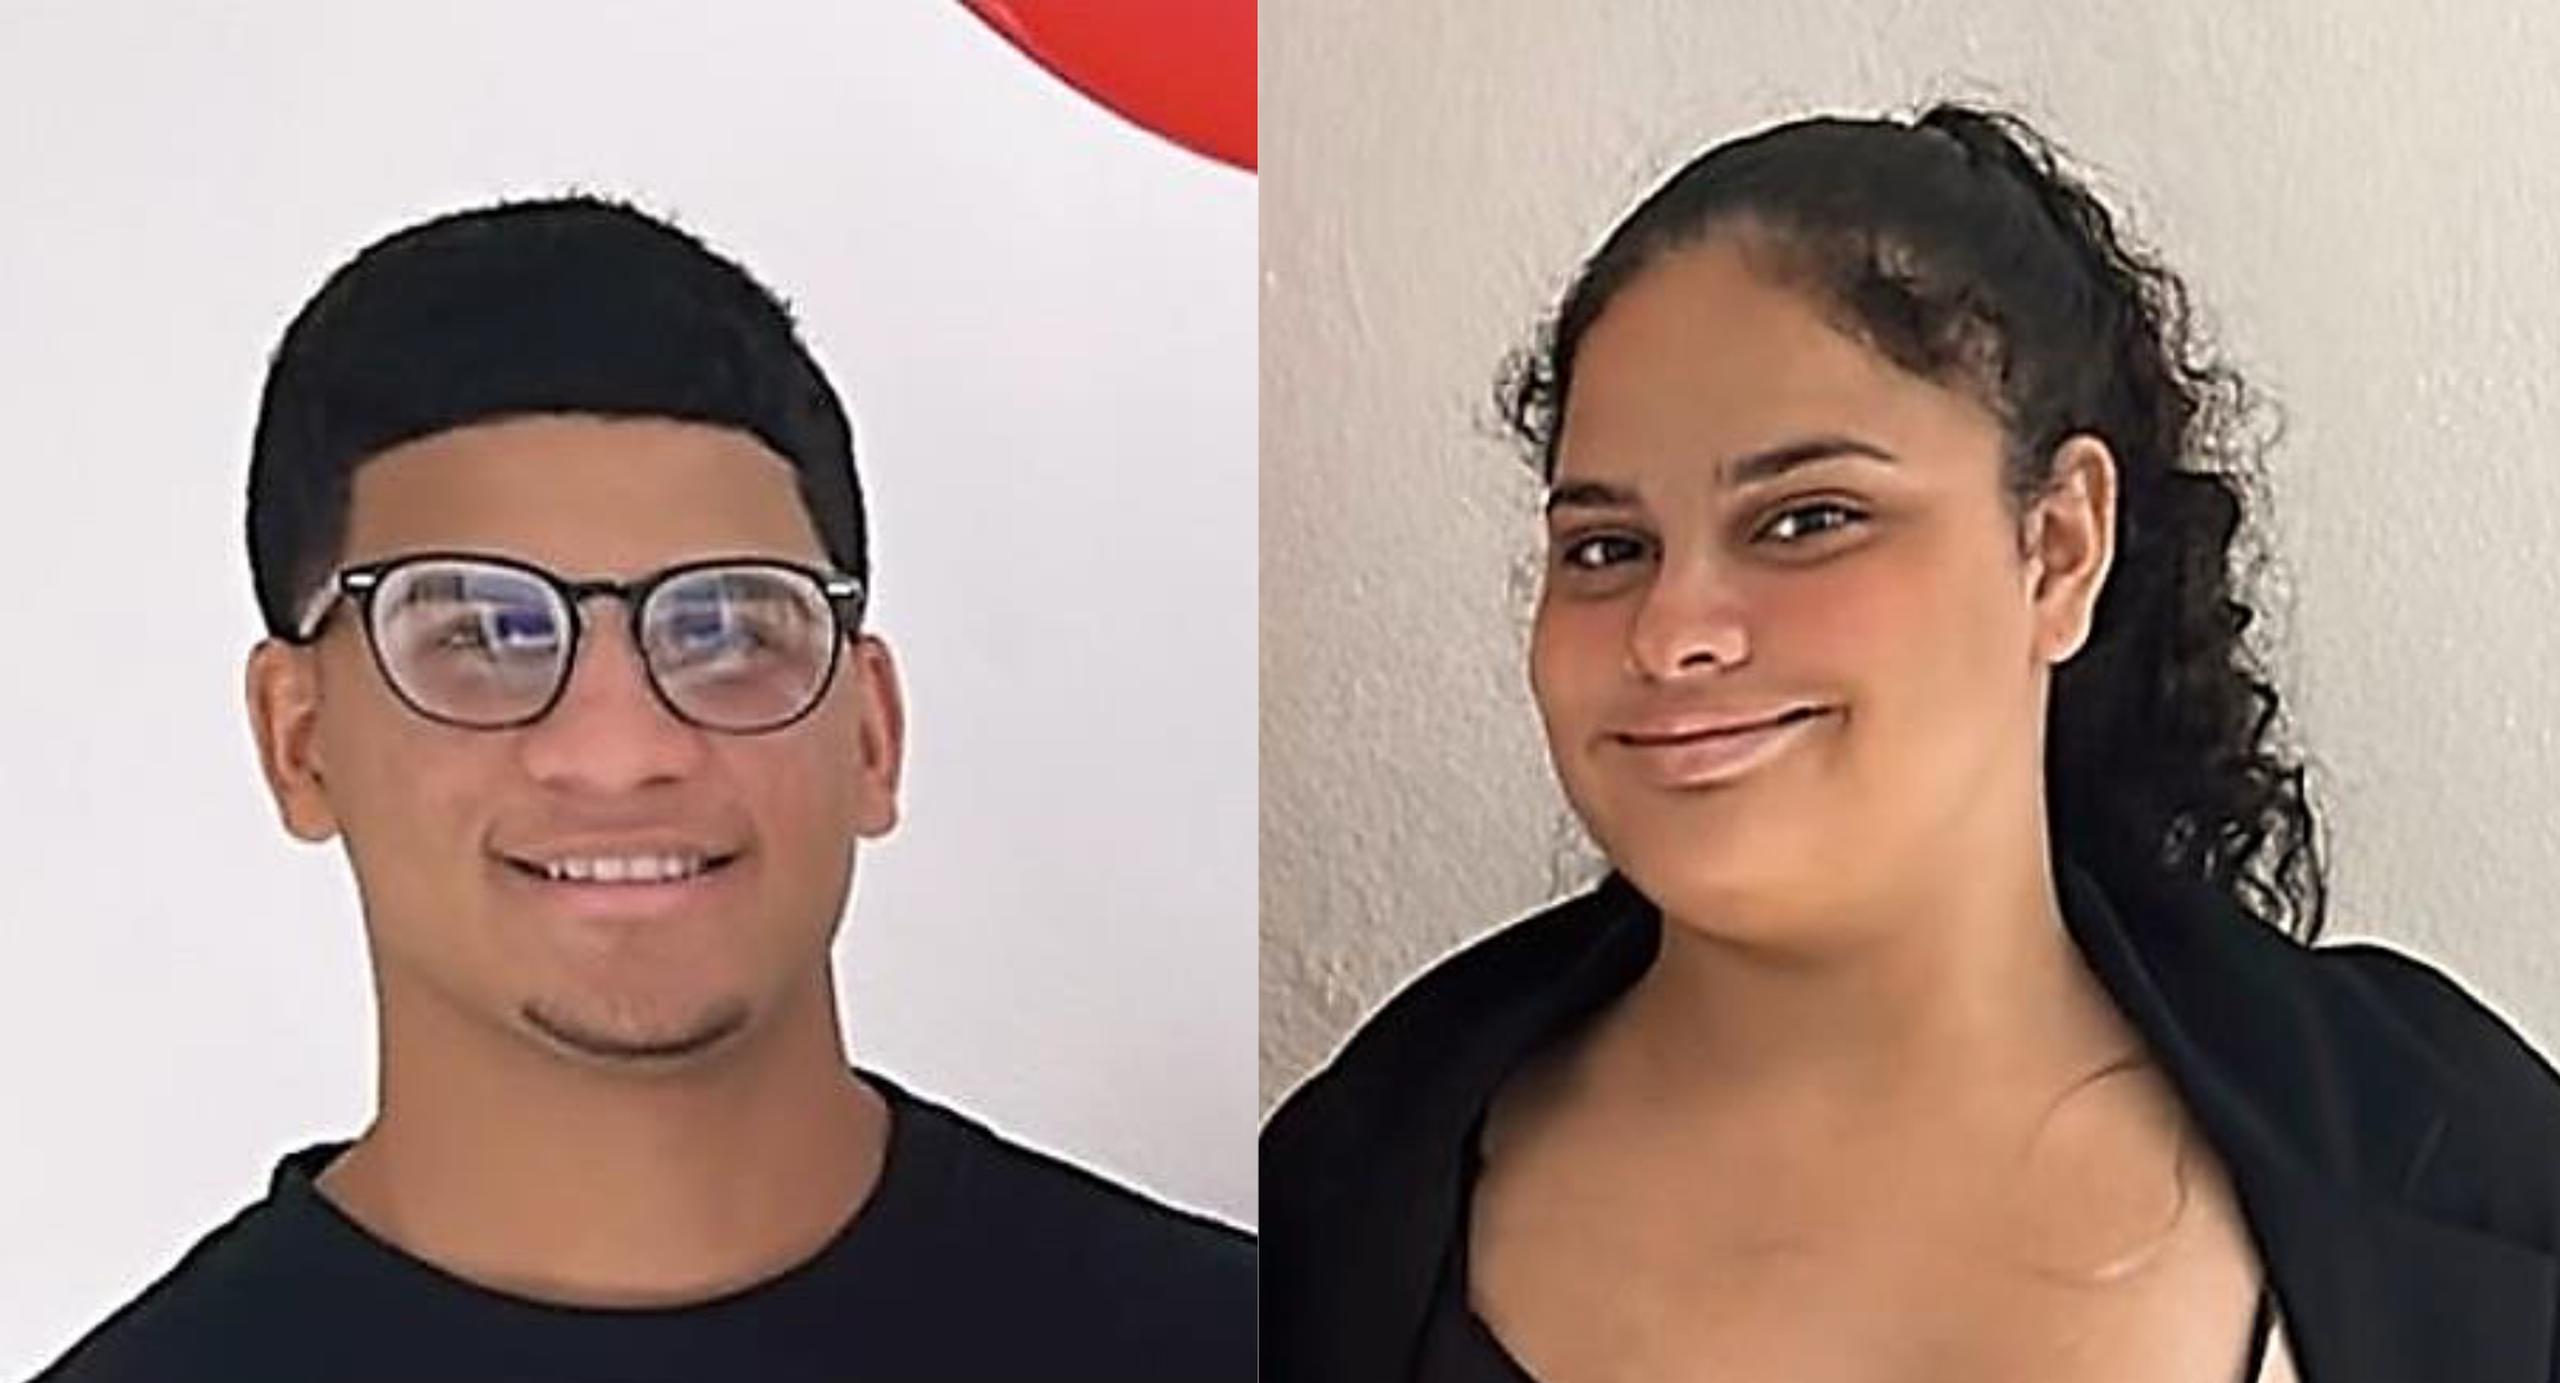 Yamil M. González Marrero, de 17 años, y Naiyelis González Marrero, de 16 años, los hermanos desaparecidos en San Juan.